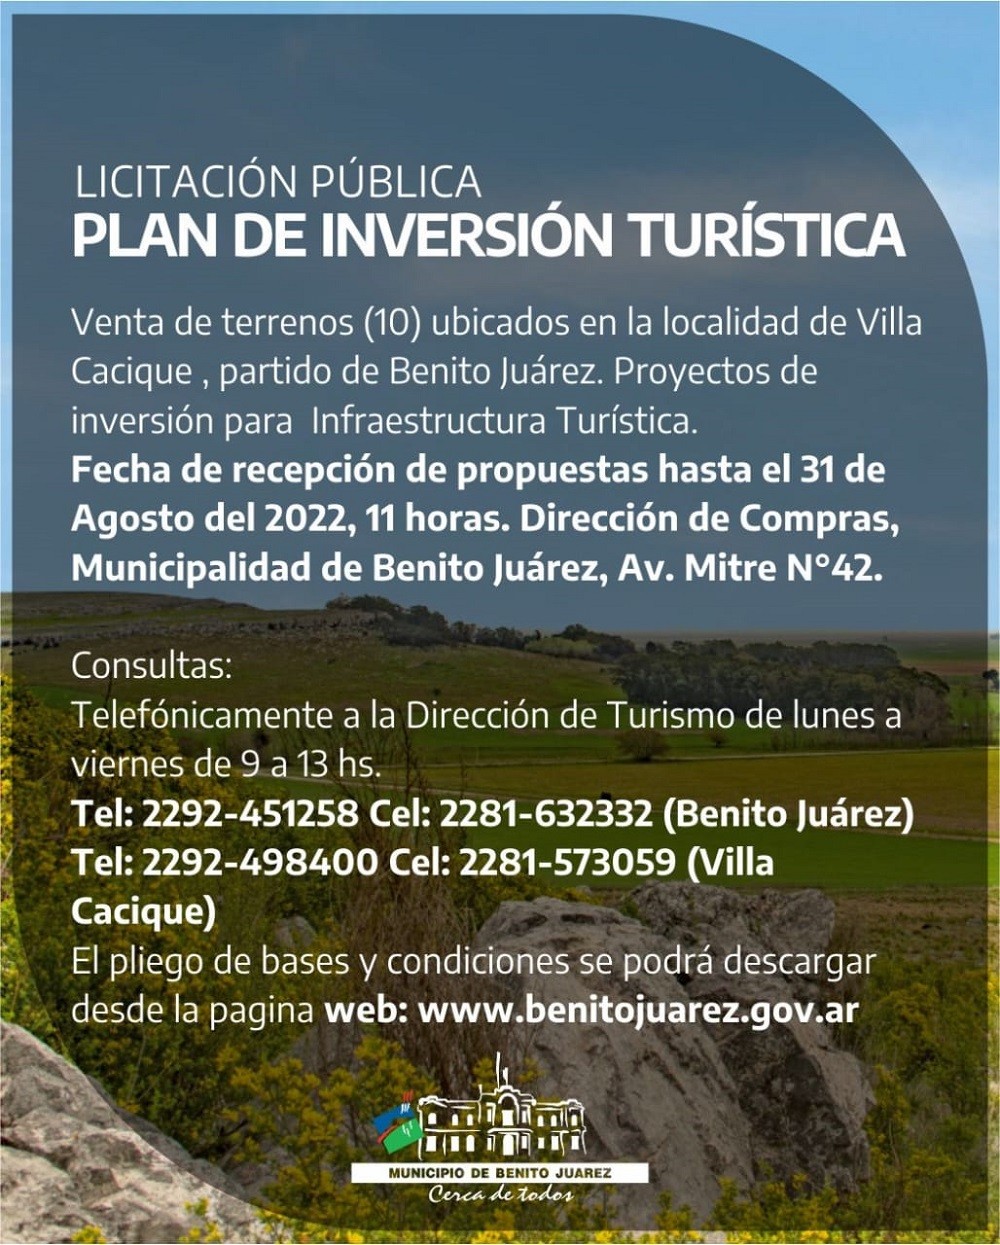 La Municipalidad de Benito Juárez informa el llamado a licitación en el marco del Plan de Inversión Turística